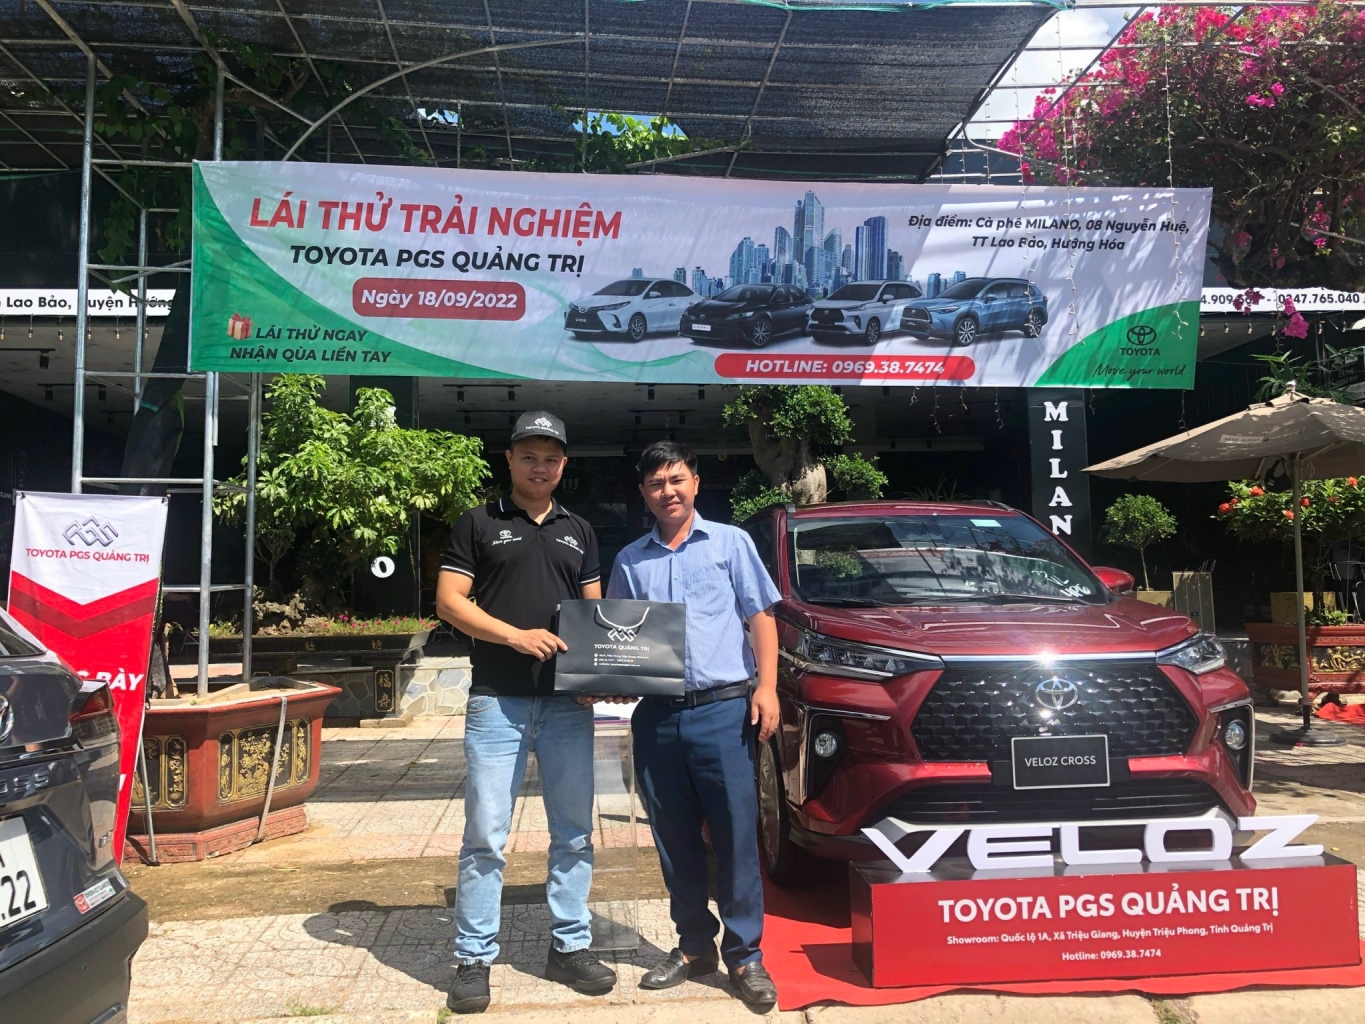 Toyota Quảng Trị tặng quà cho khách hàng tham gia Lái thử